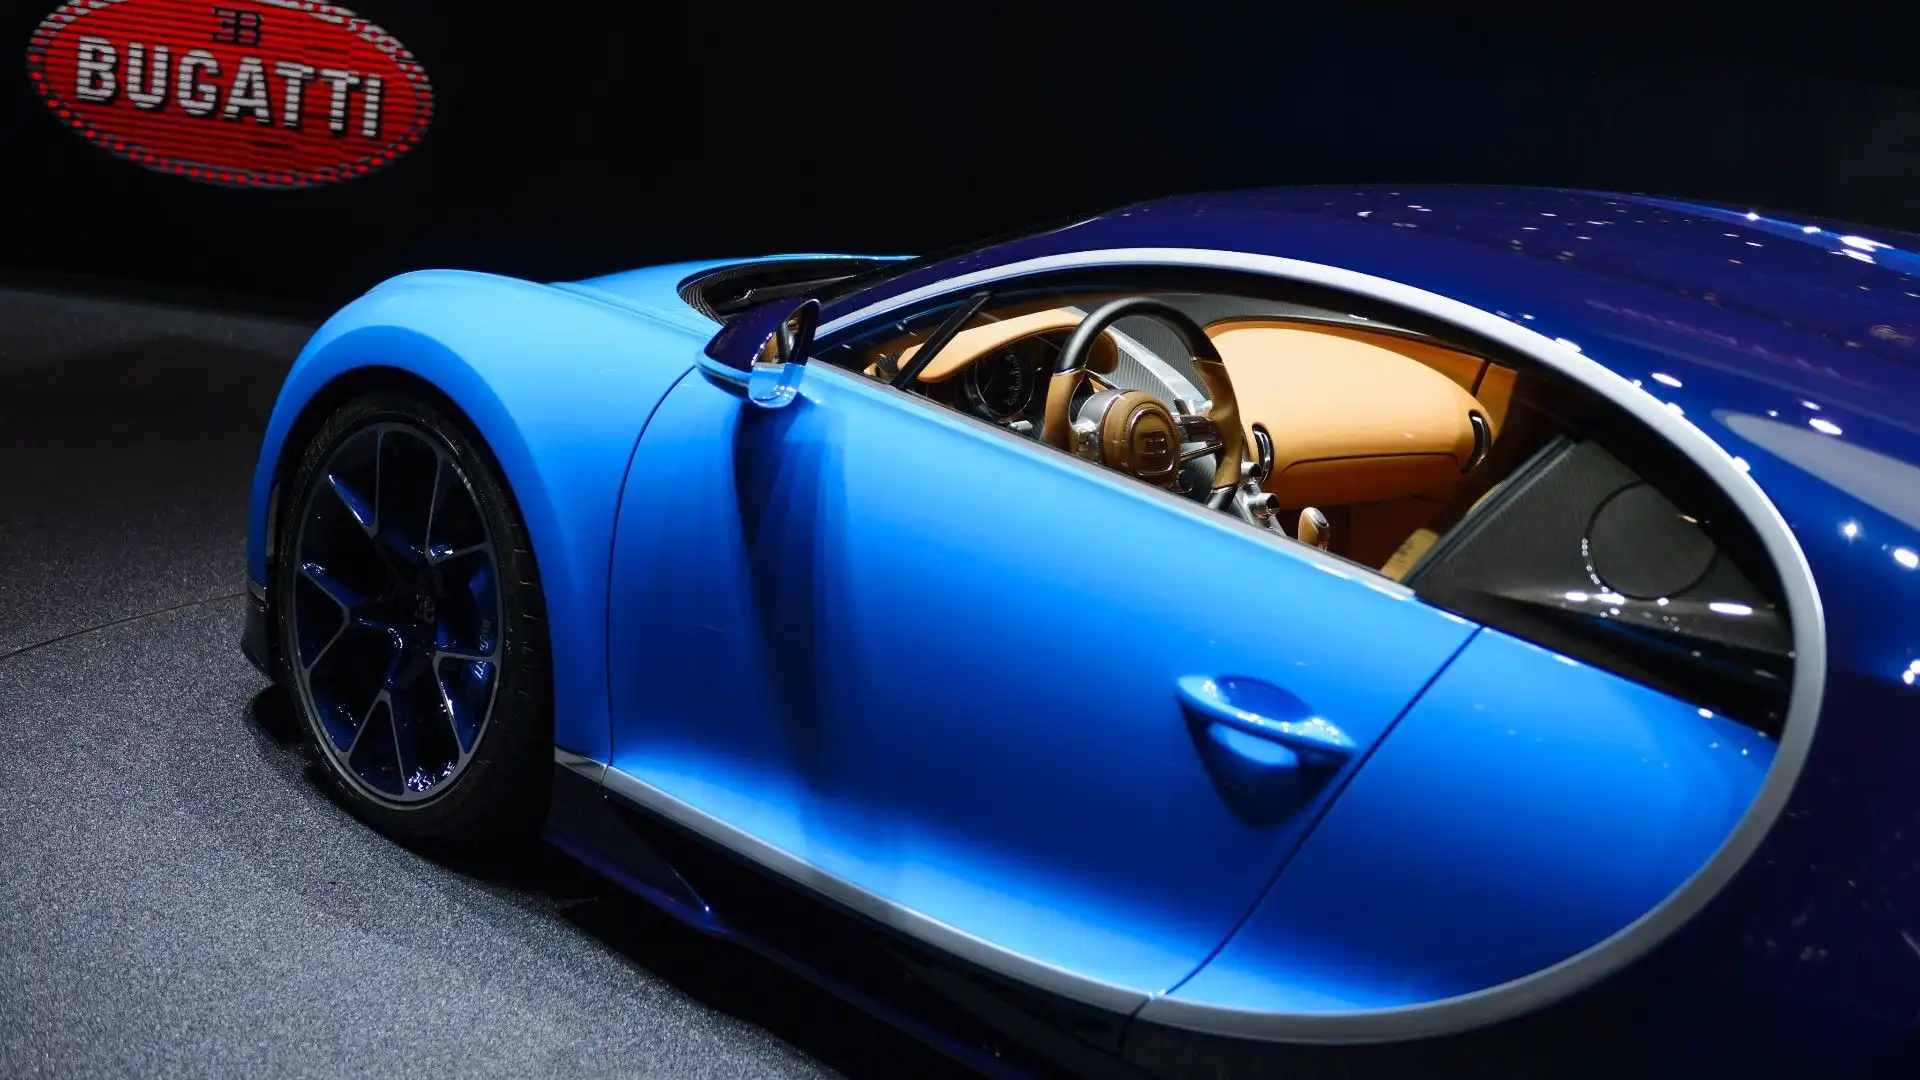 Al lancio, la Veyron era l'autovettura di serie più veloce mai costruita, con una velocità massima di 408,47 km/h